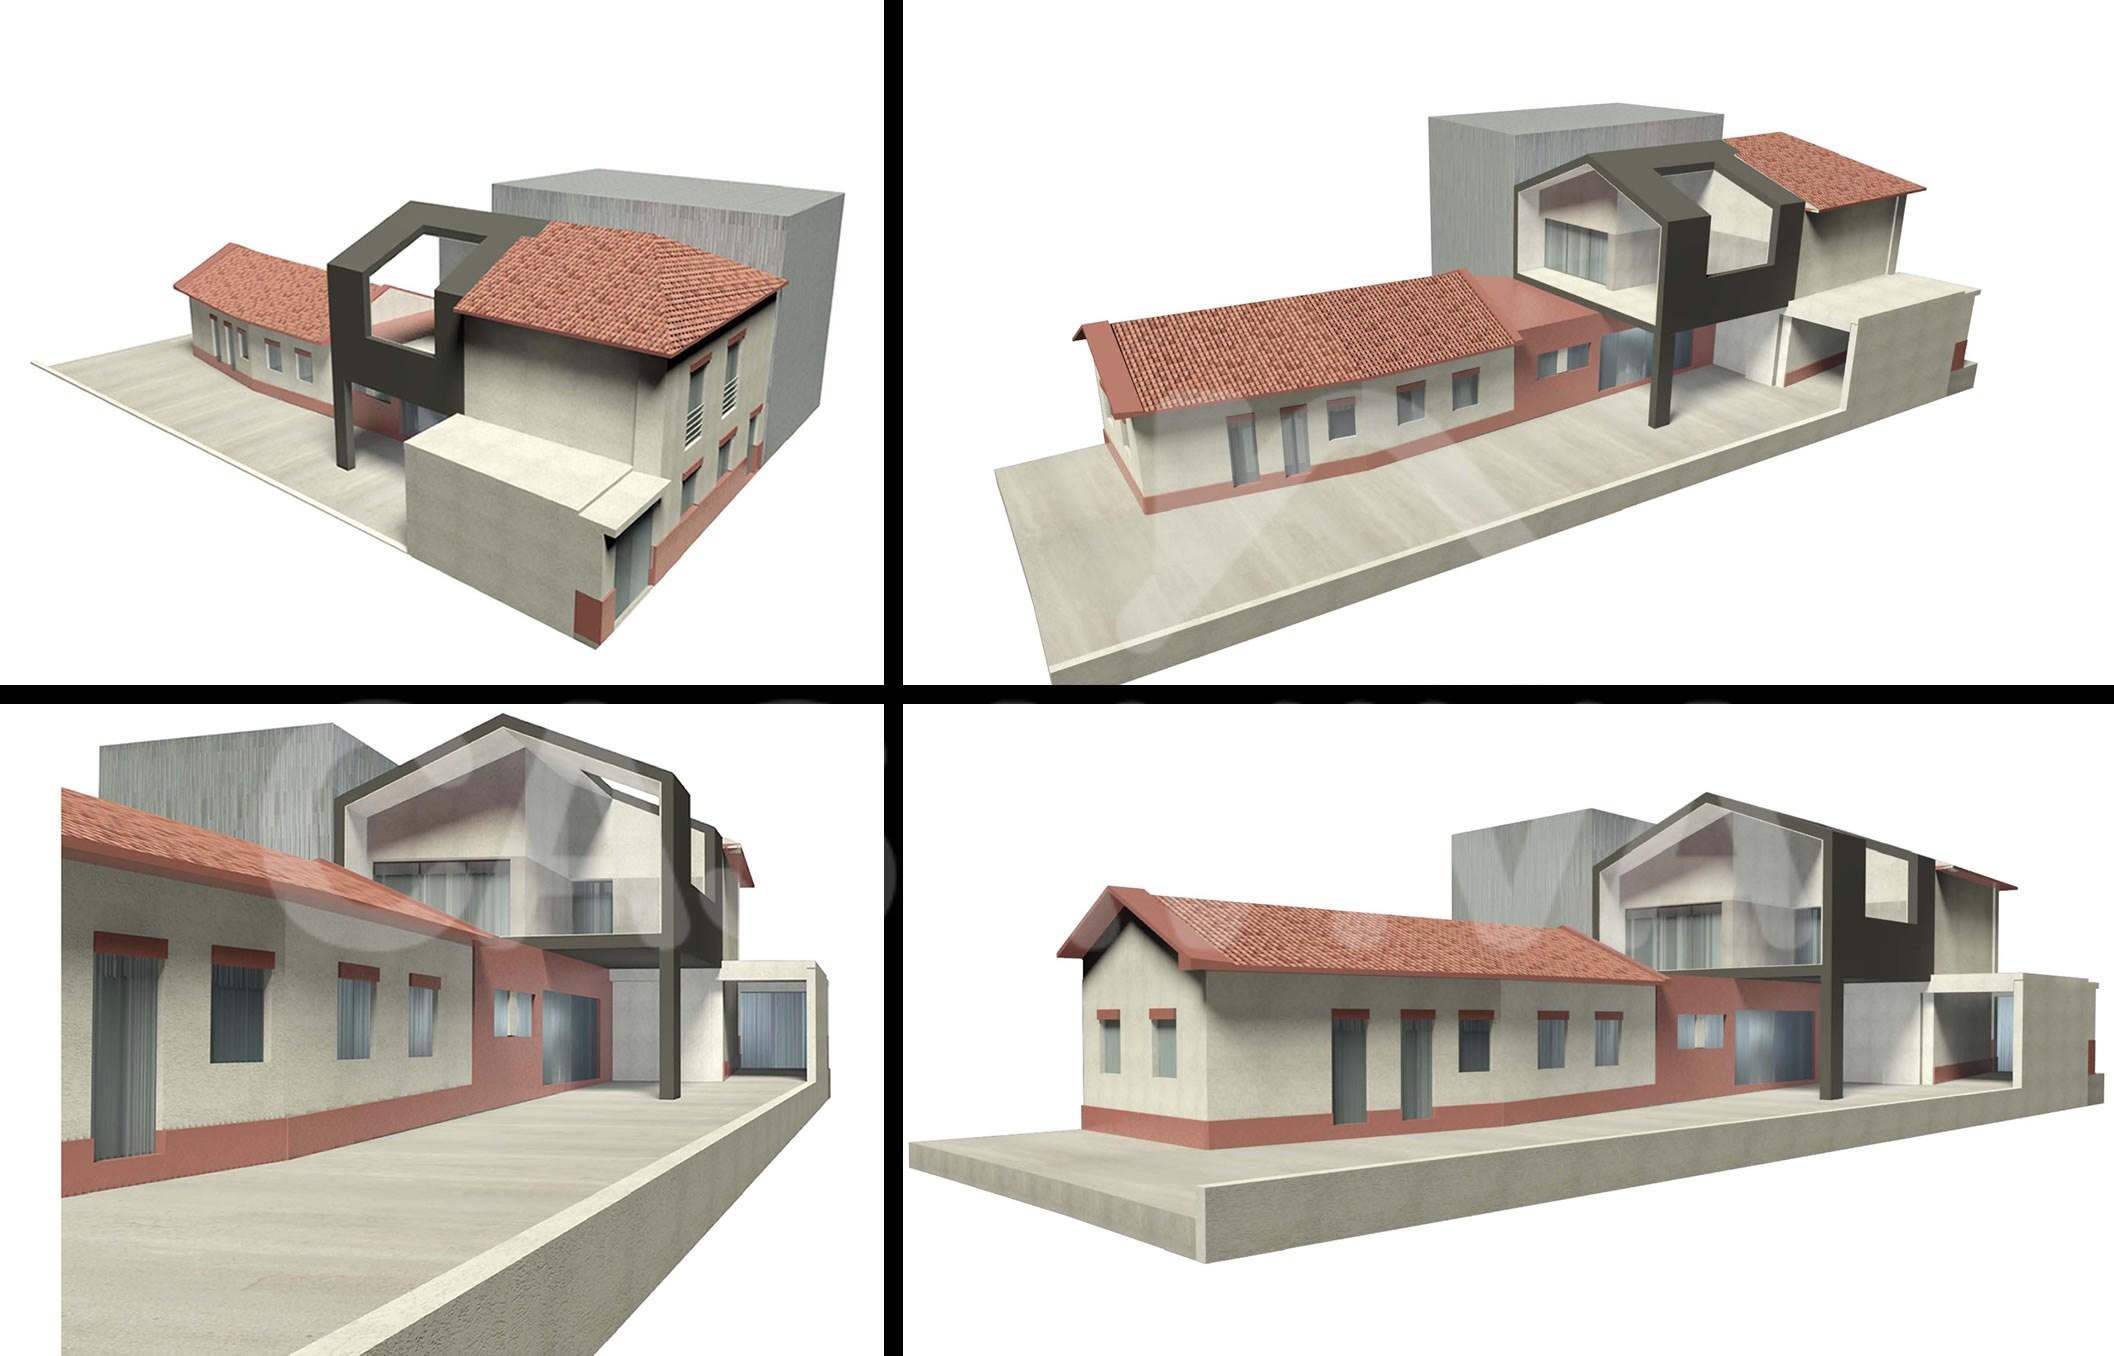 Diferentes vistas 3D de la propuesta de ampliacin de la vivienda.